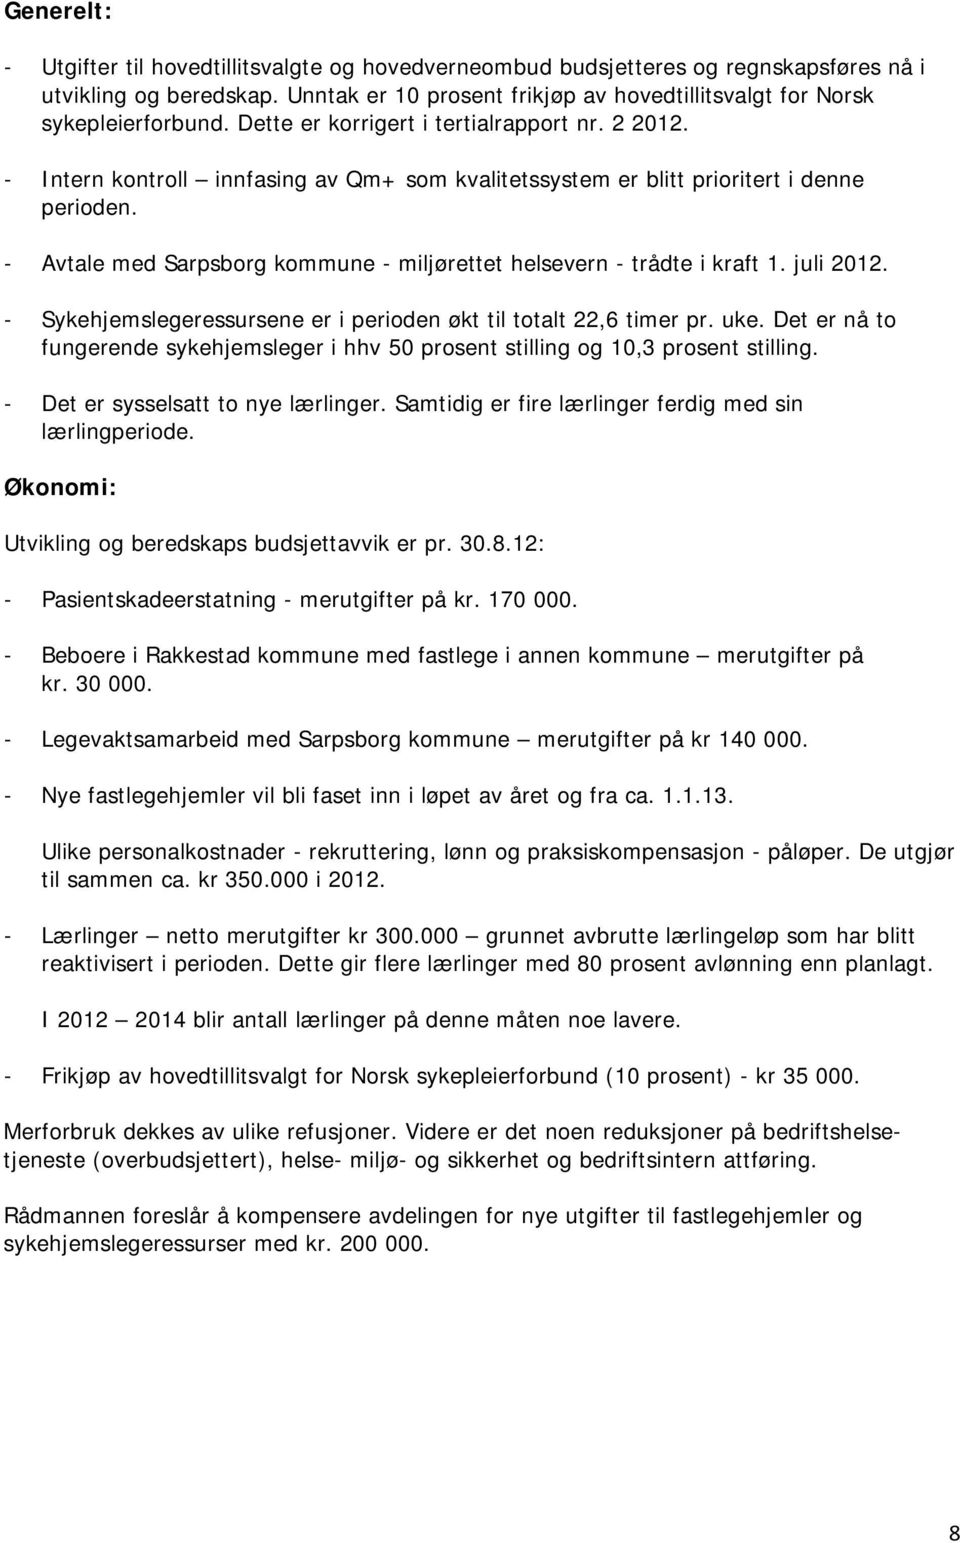 - Intern kontroll innfasing av Qm+ som kvalitetssystem er blitt prioritert i denne perioden. - Avtale med Sarpsborg kommune - miljørettet helsevern - trådte i kraft 1. juli 2012.